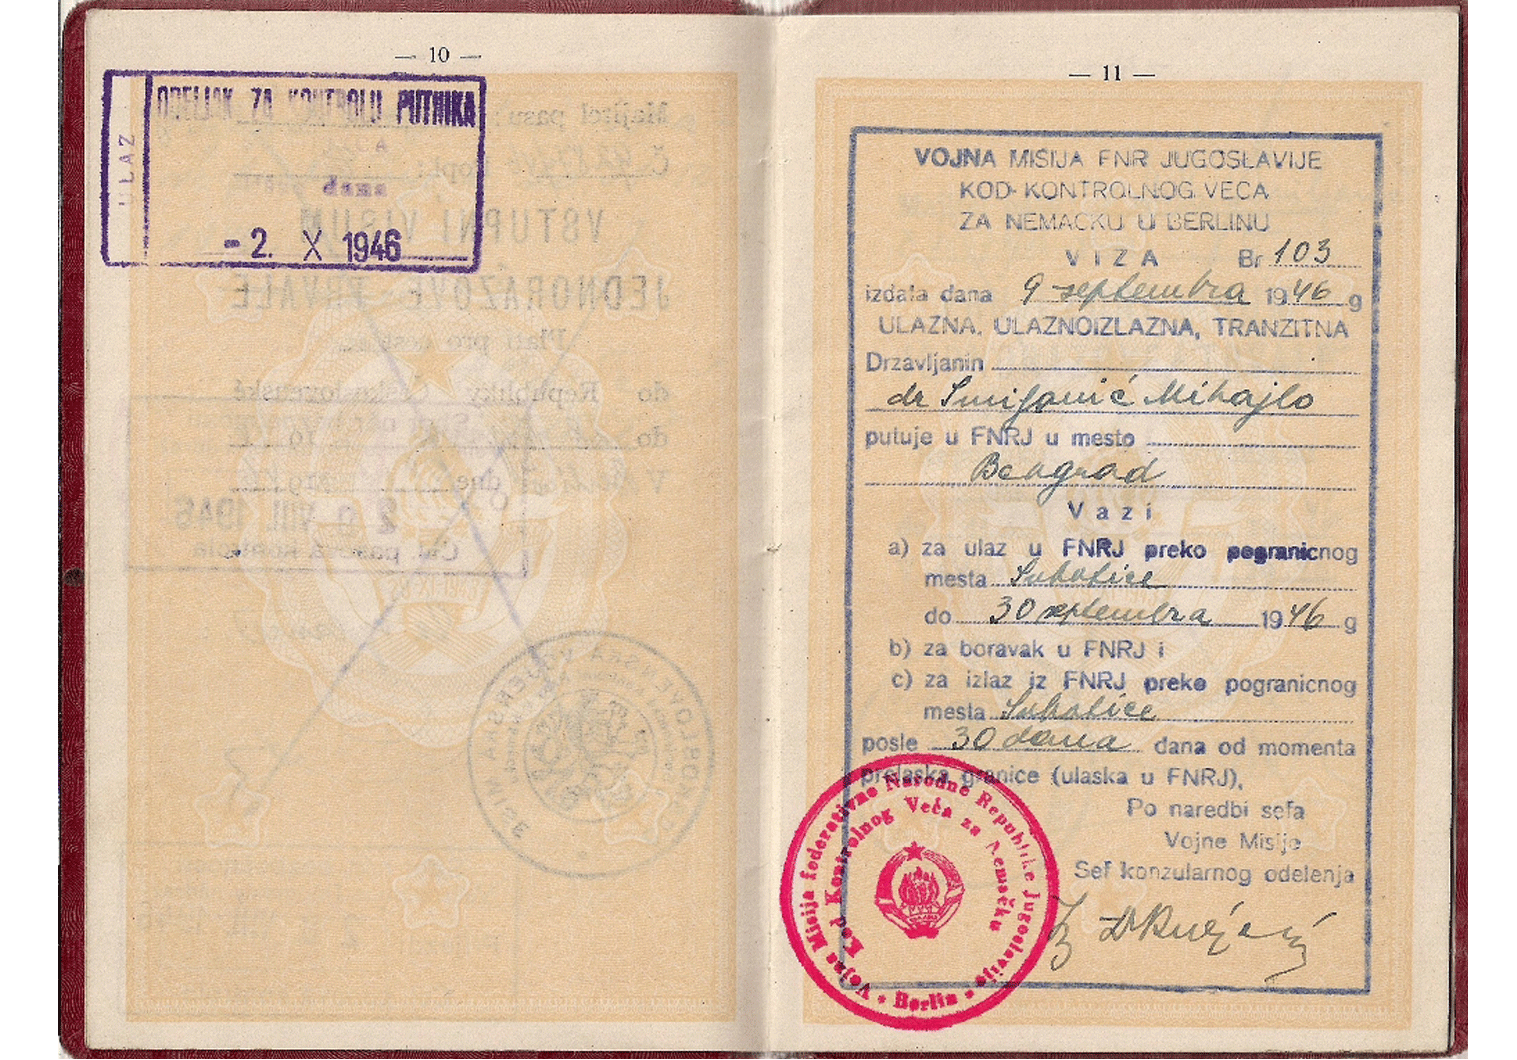 1945 Yugoslavian official passport